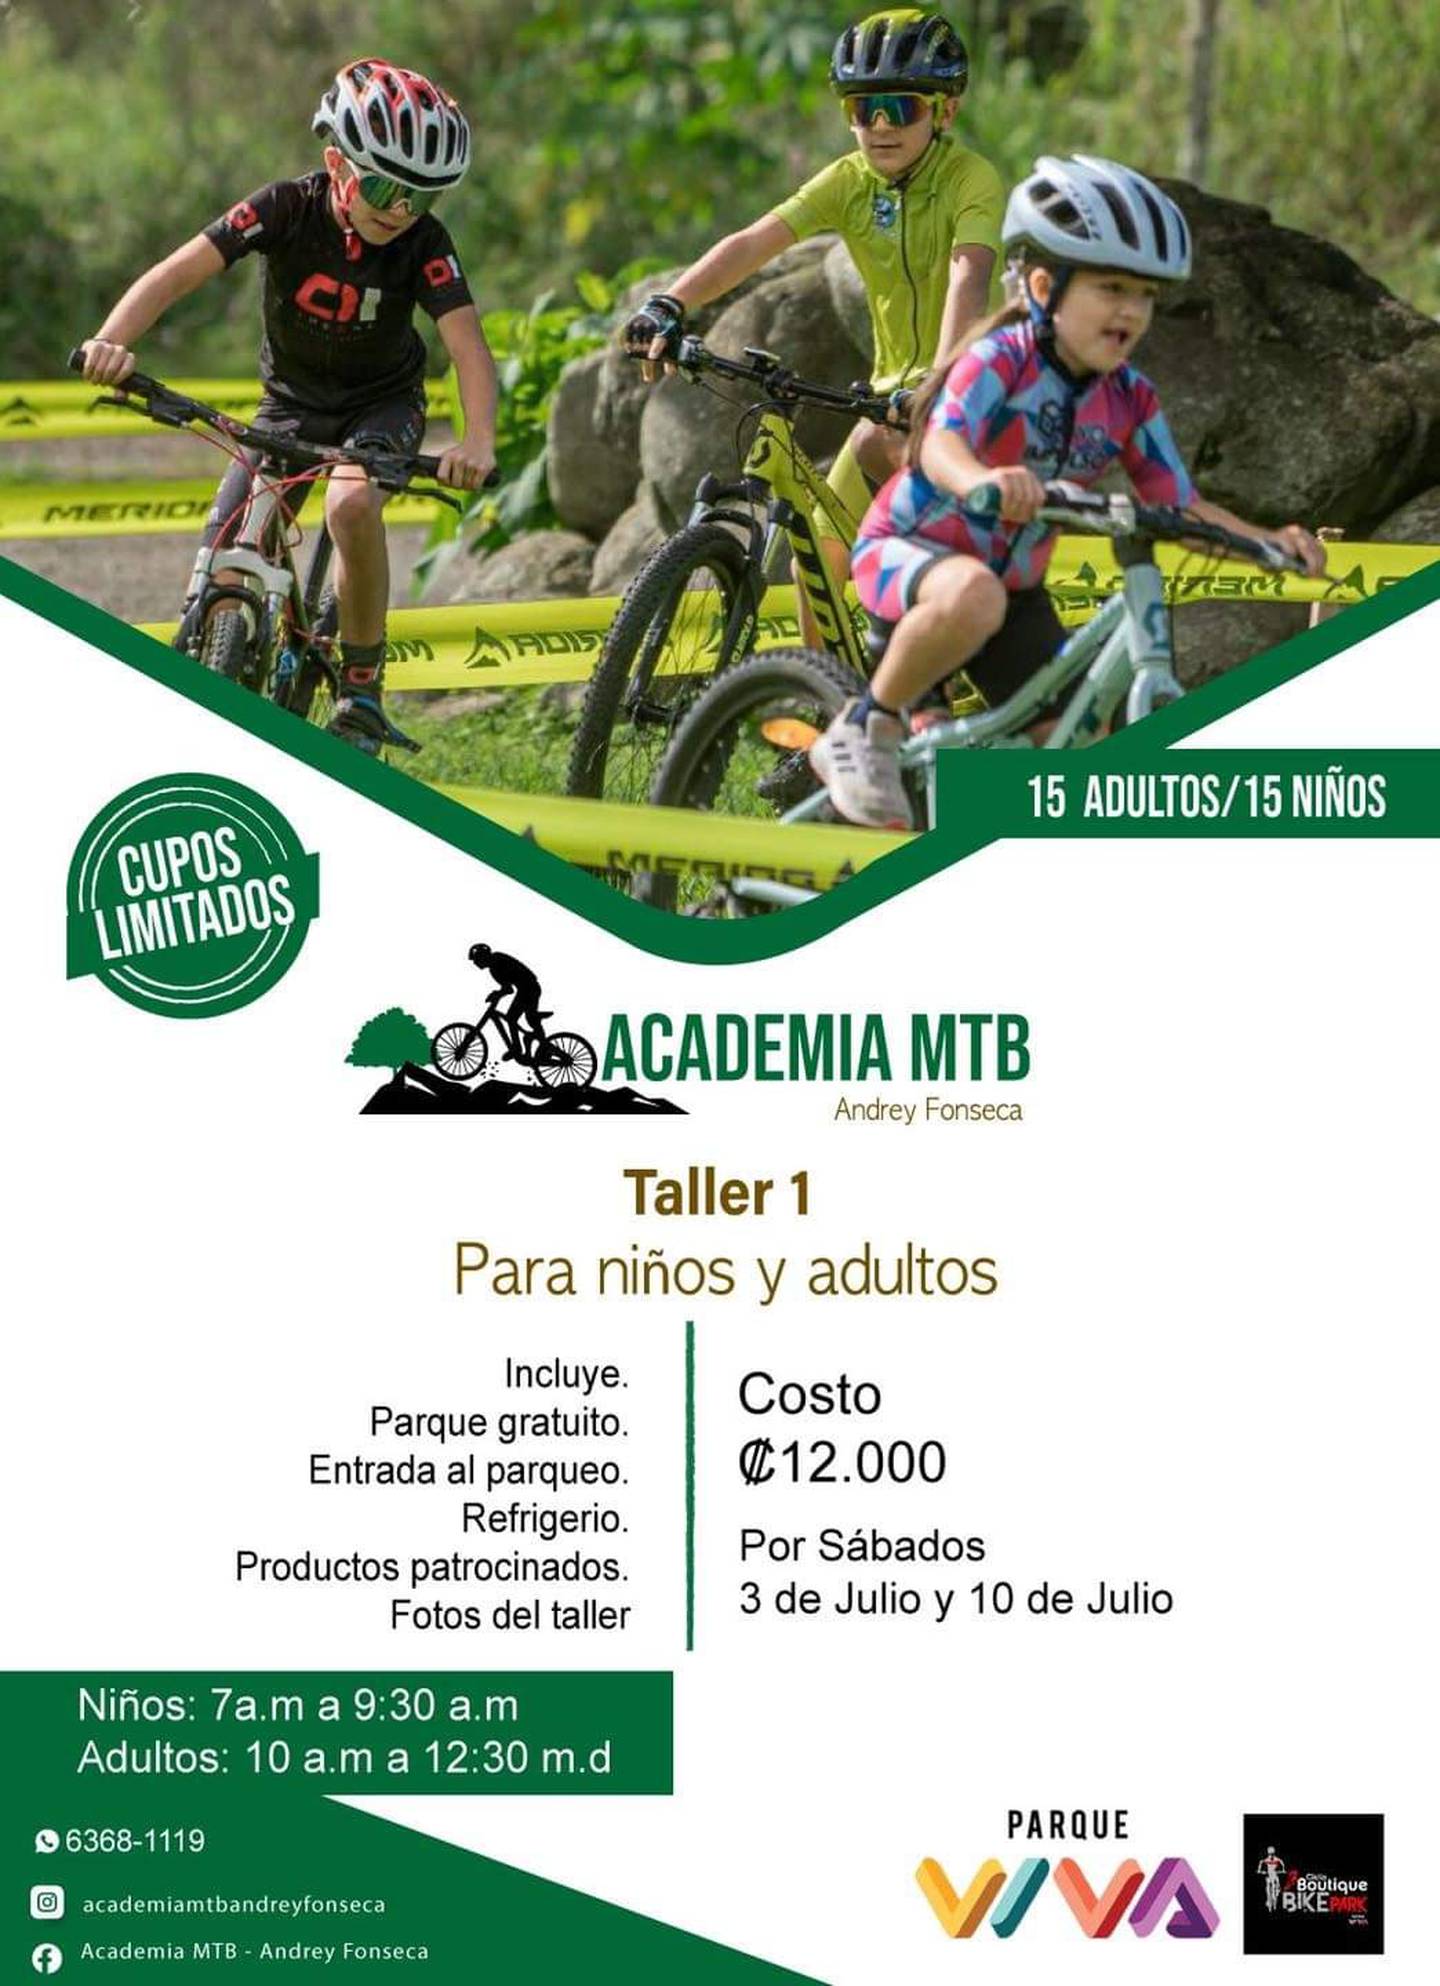 Escuela de Ciclismo Andrey Fonseca
02 de julio del 2021
Circuito Ciclo Boutique Bike Park
Cortesía